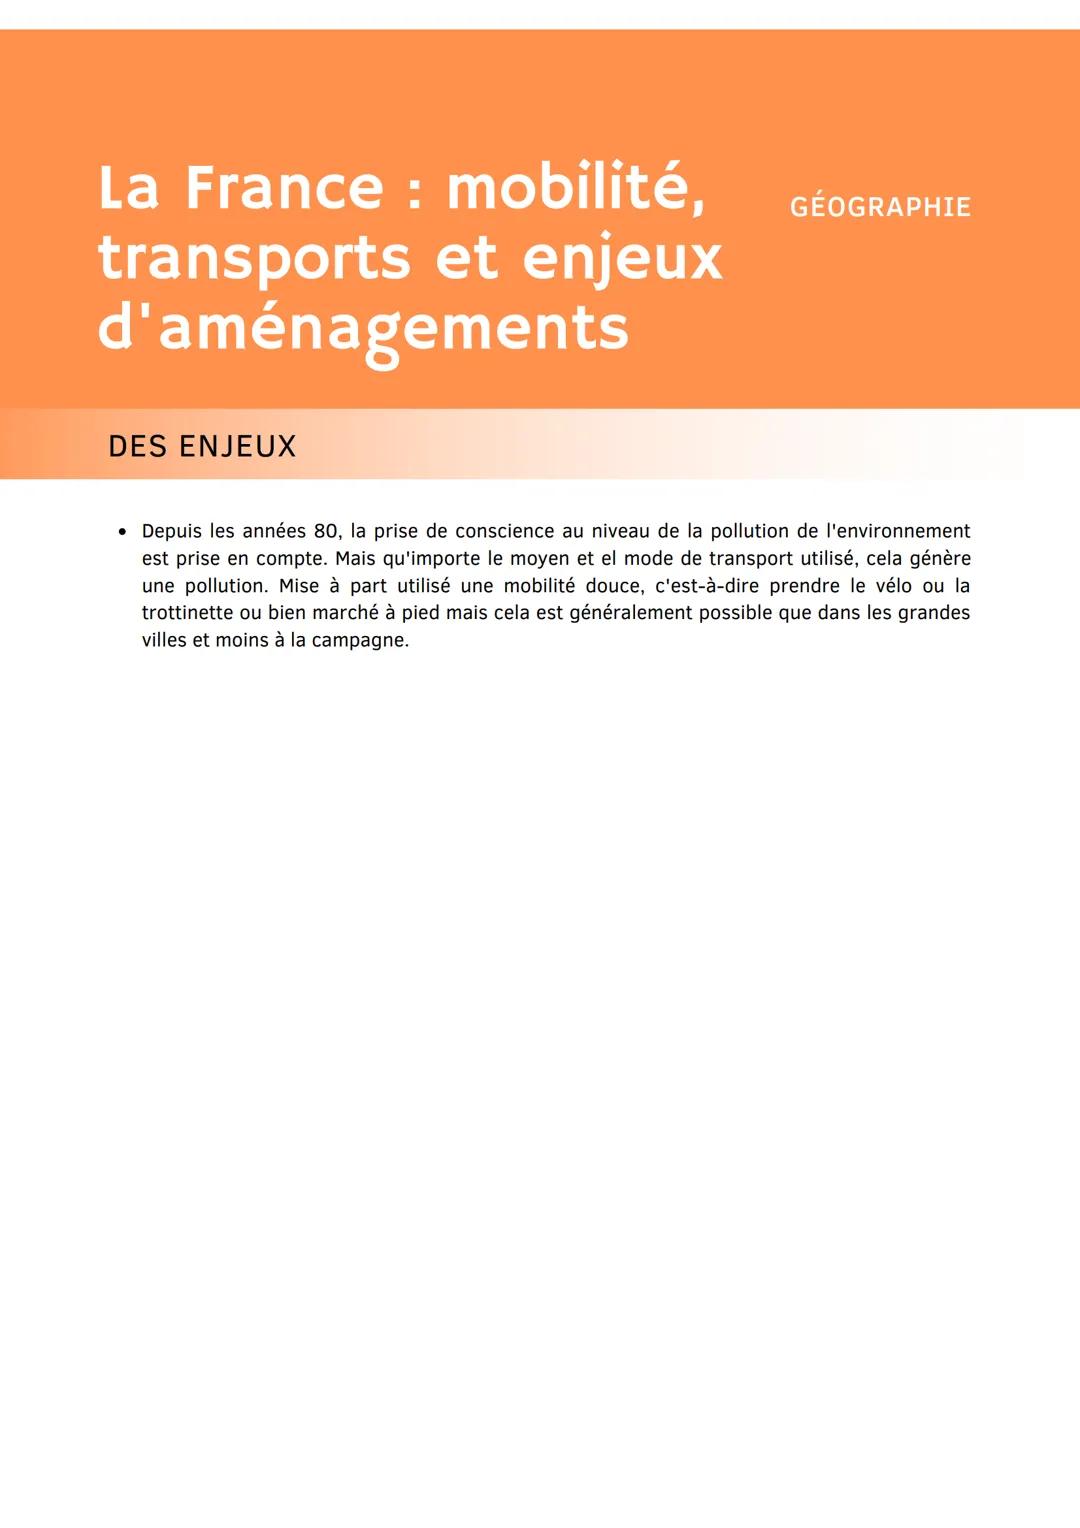 La France : mobilité,
et enjeux
transports
d'aménagements
LES SYSTÈMES DE TRANSPORTS
• En France, il y a des moyens de transports qui sont u